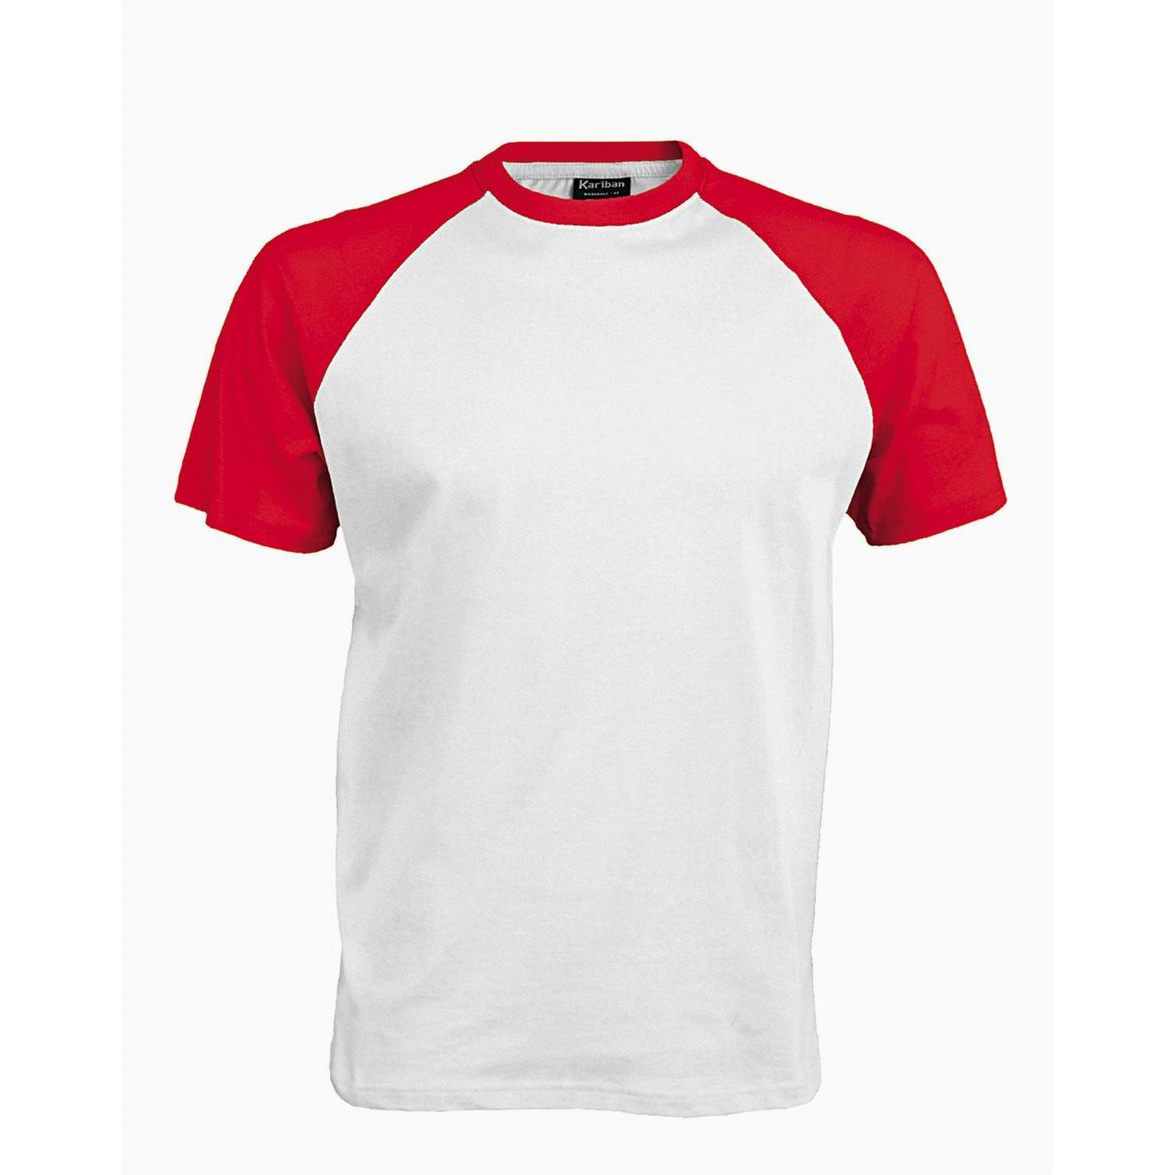 Pánské tričko Kariban BASE BALL - bílé-červené, XL